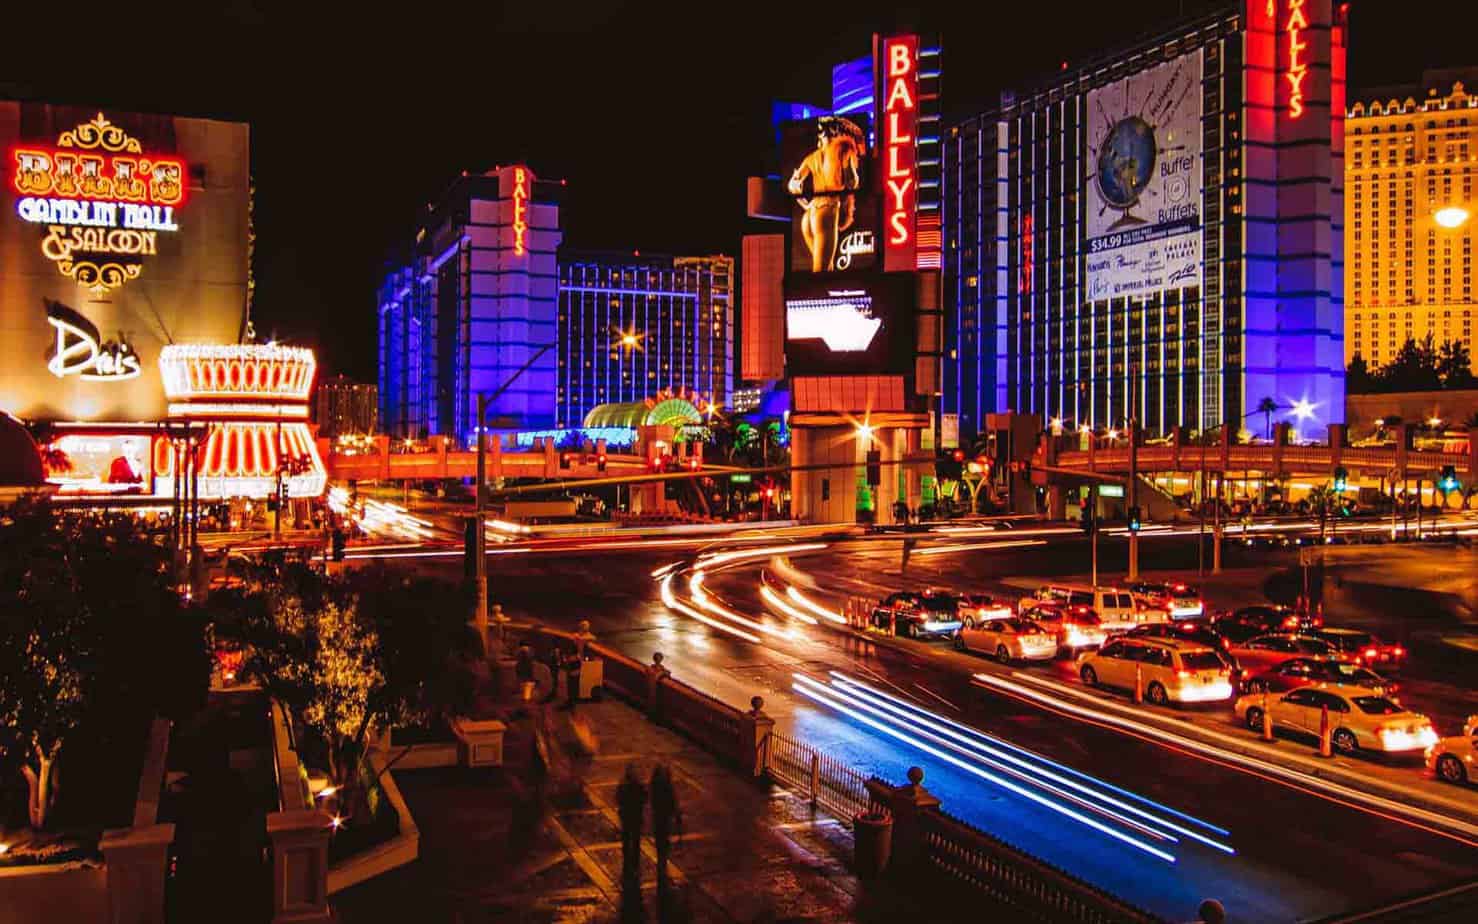 Las Vegas Hit Hard by Economic Impact of Pandemic